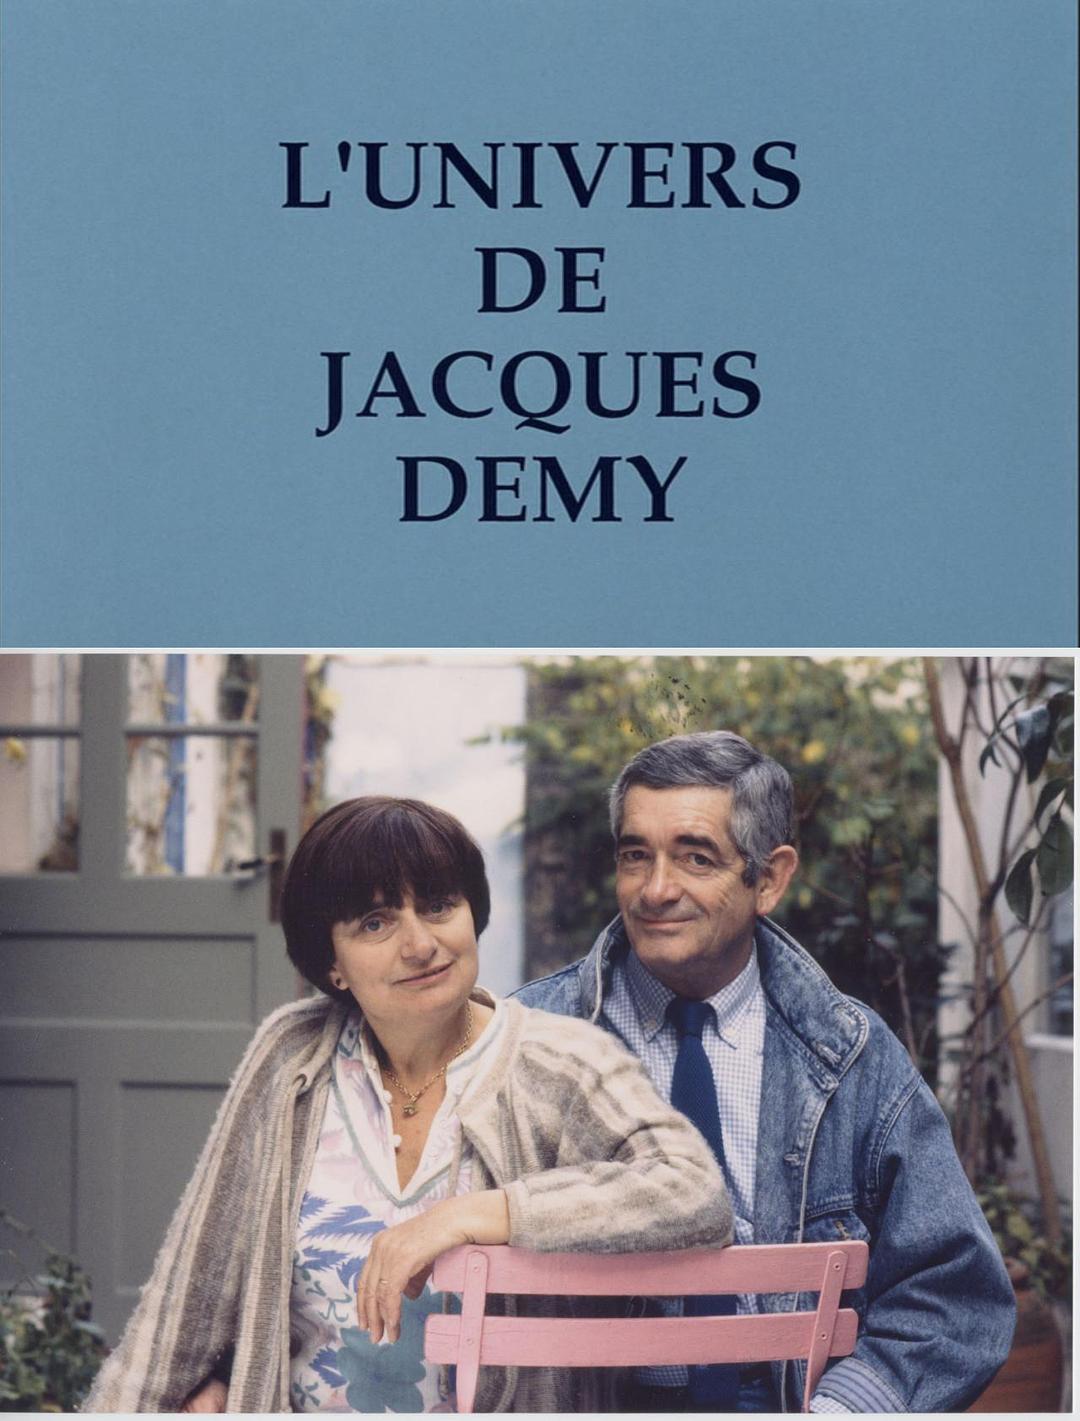 雅克·德米的天下 The.World.of.Jacques.Demy.1995.1080p.BluRay.x264-BiPOLAR 6.56GB-1.png